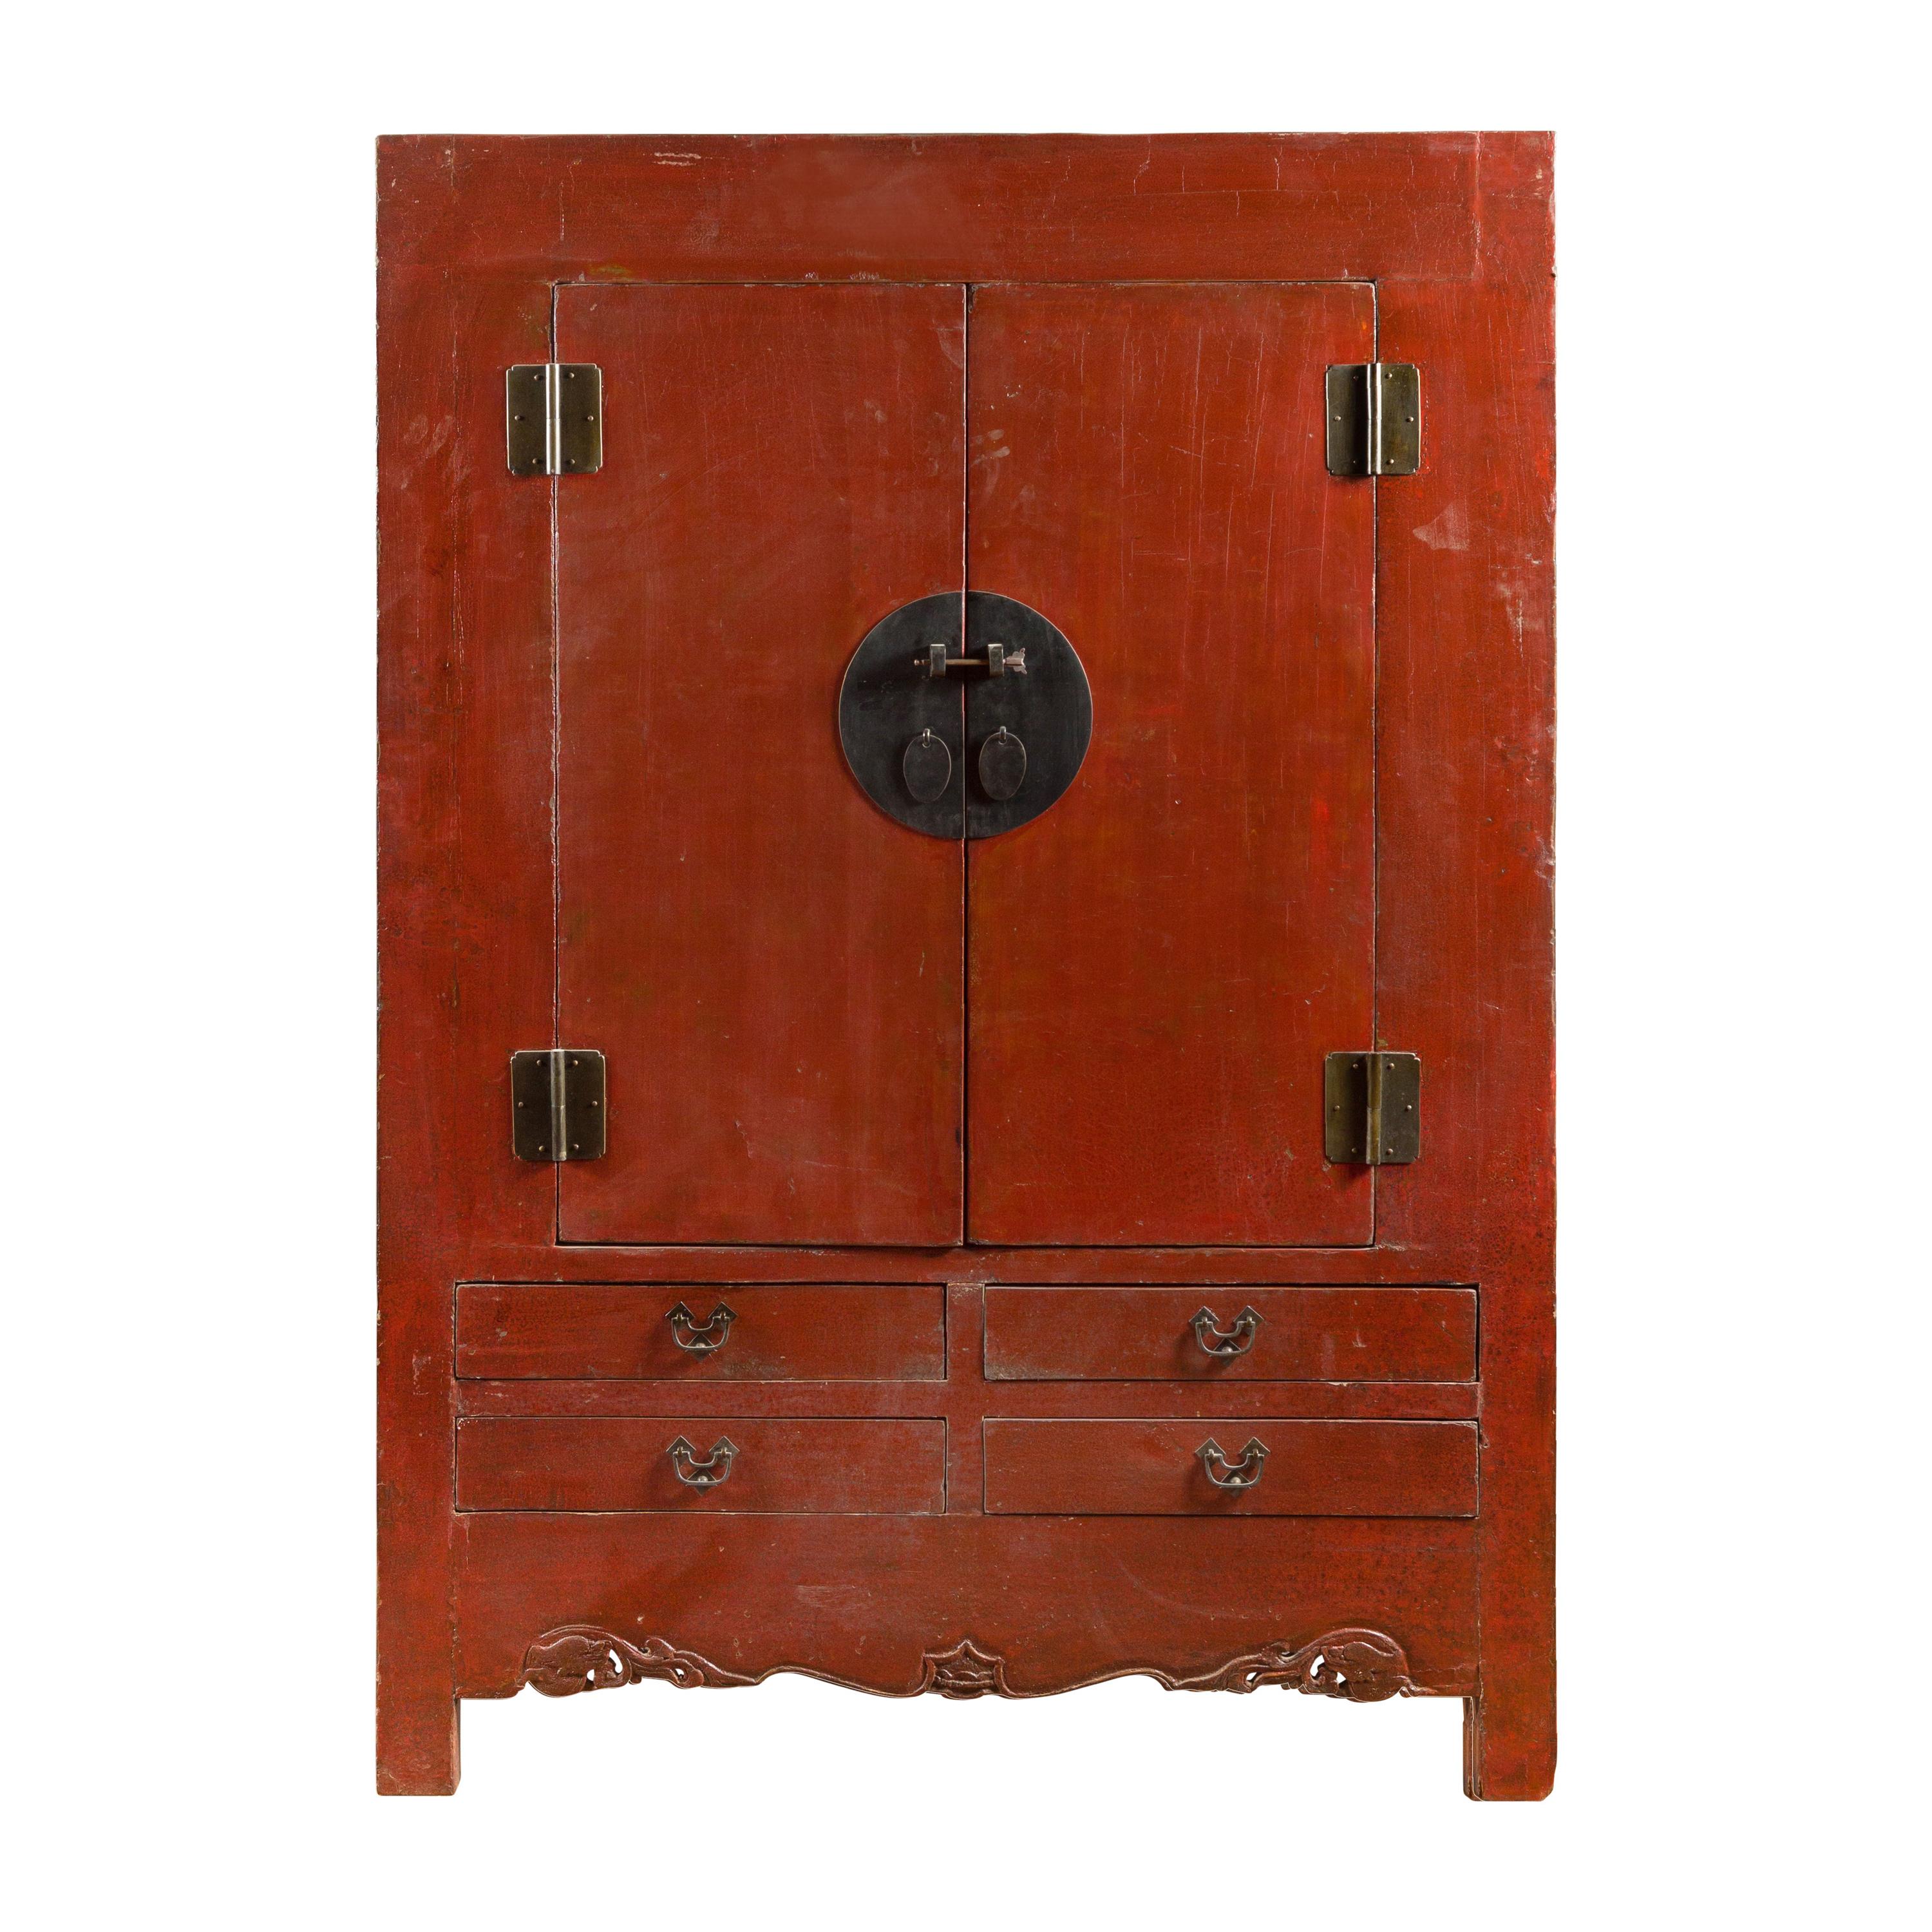 Chinesischer rot lackierter Schrank aus der Qing-Dynastie des 19. Jahrhunderts mit Medaillonbeschlägen